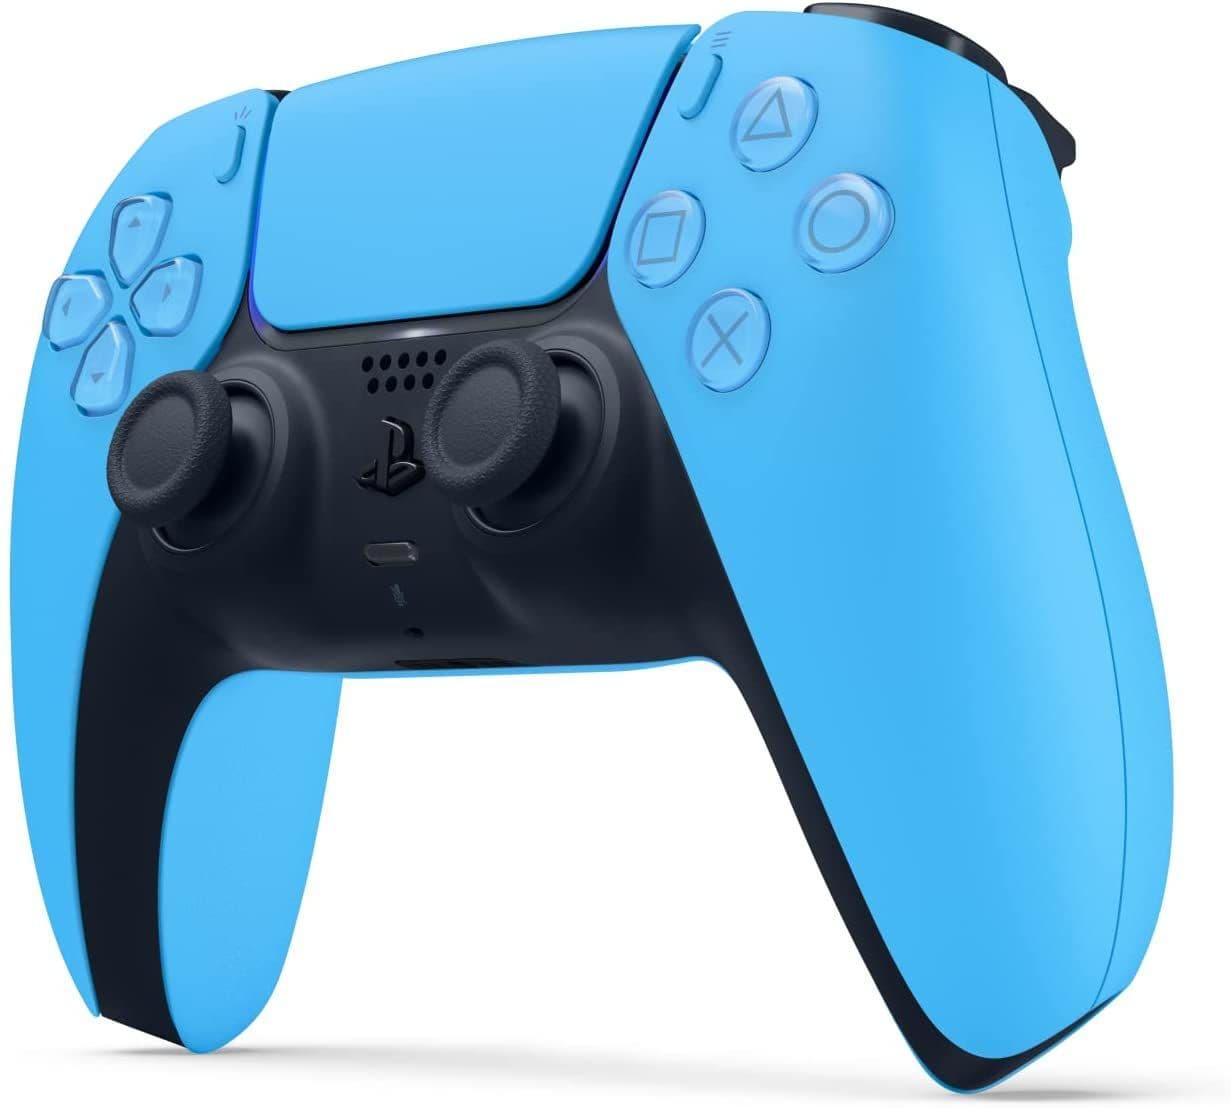 Starlight Blue DualSense Wireless Controller - PlayStation 5 - Want a New Gadget